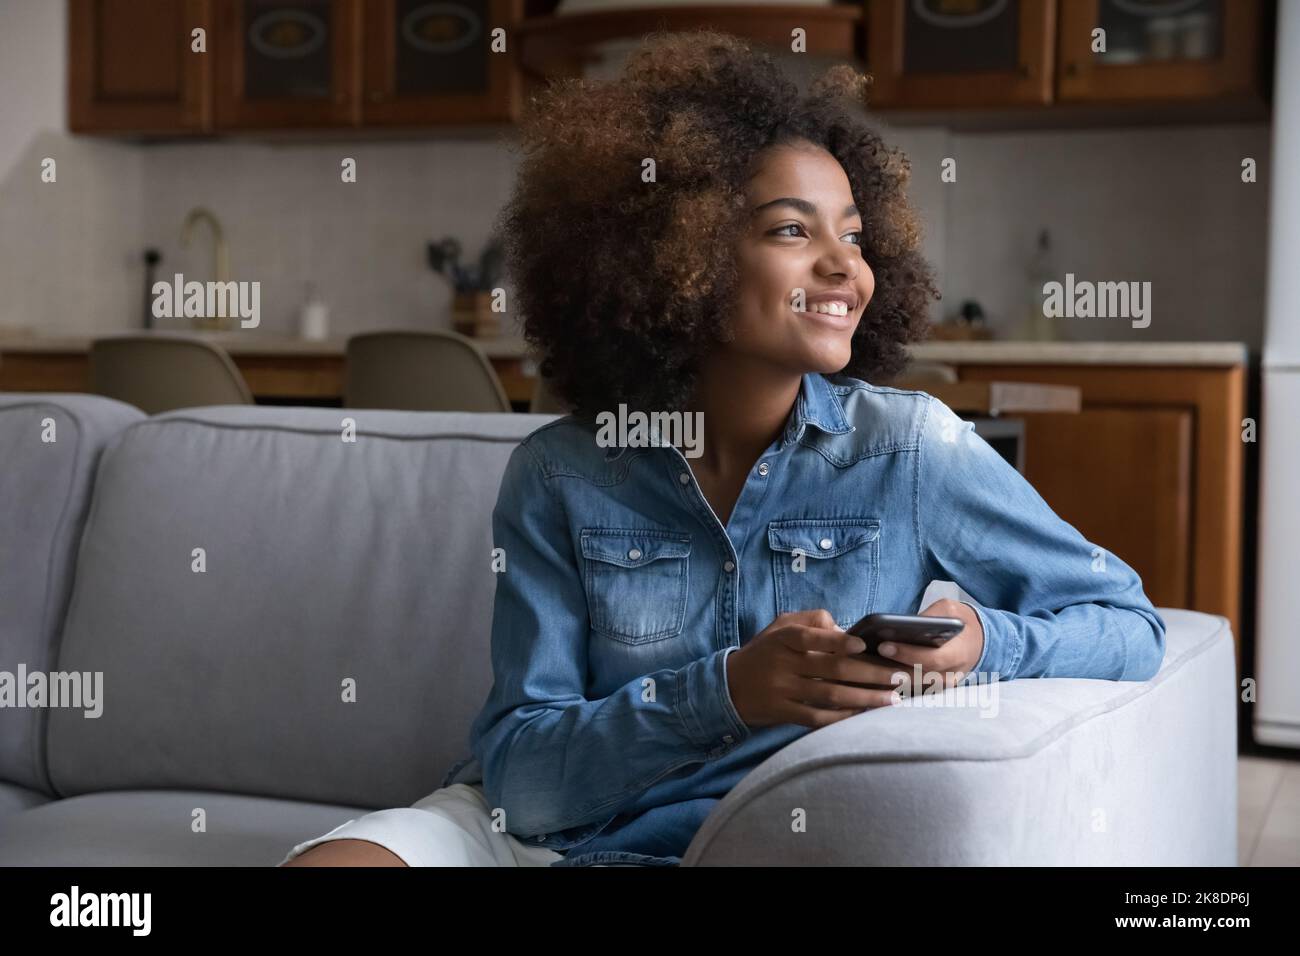 Belle adolescente africaine reposant sur un canapé avec un smartphone Banque D'Images